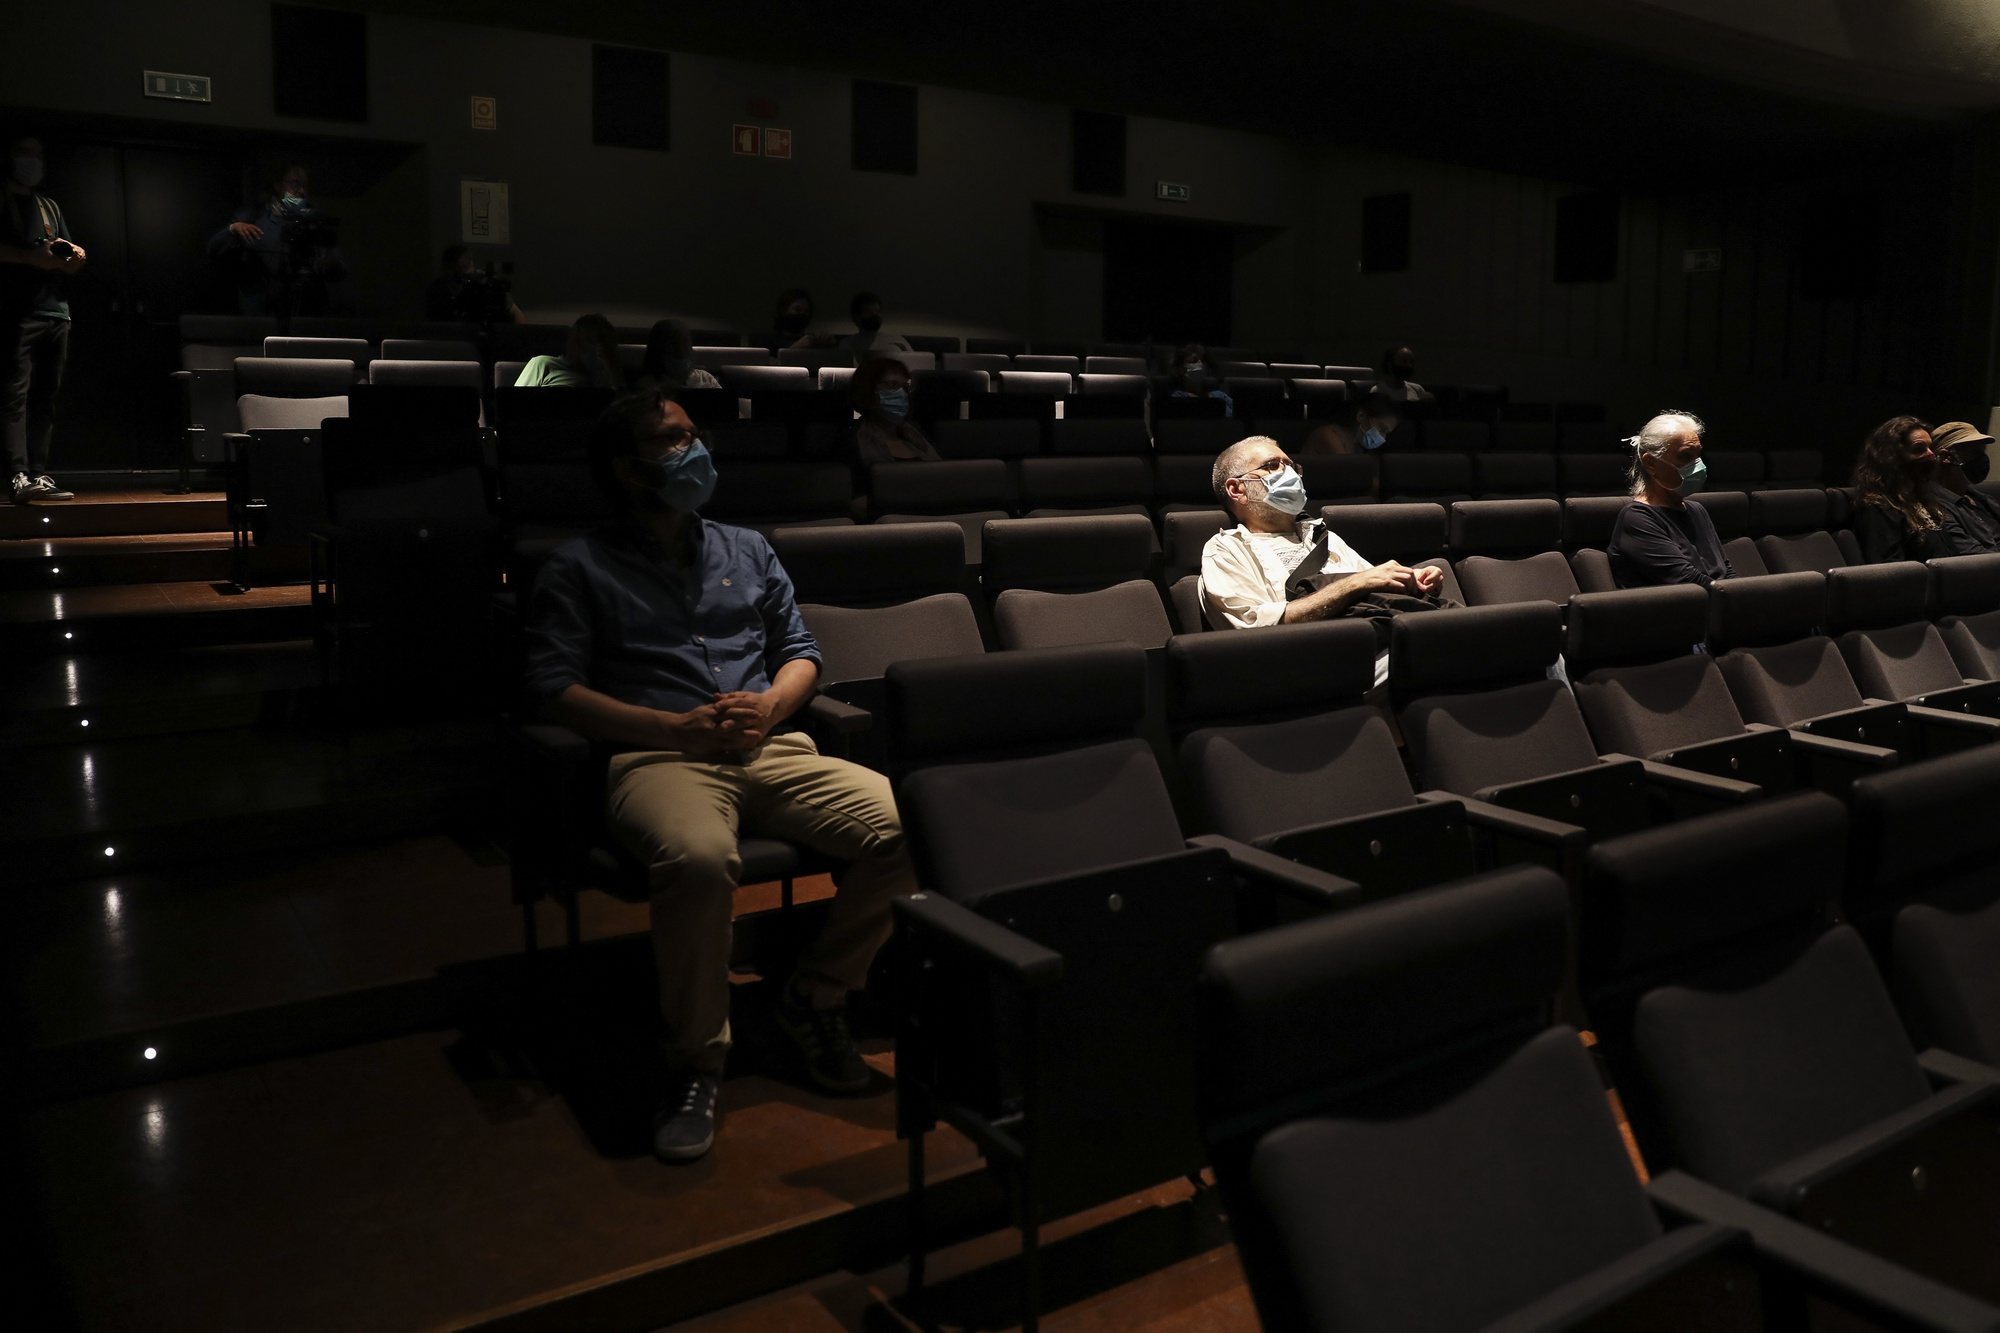 Espetadores ocupam os seus lugares com distanciamento social no Cinema Ideal que hoje iniciou as sessões após o encerramento de portas devido ao coronavírus covid-19. Lisboa, 01 de junho de 2020. JOÃO RELVAS/LUSA